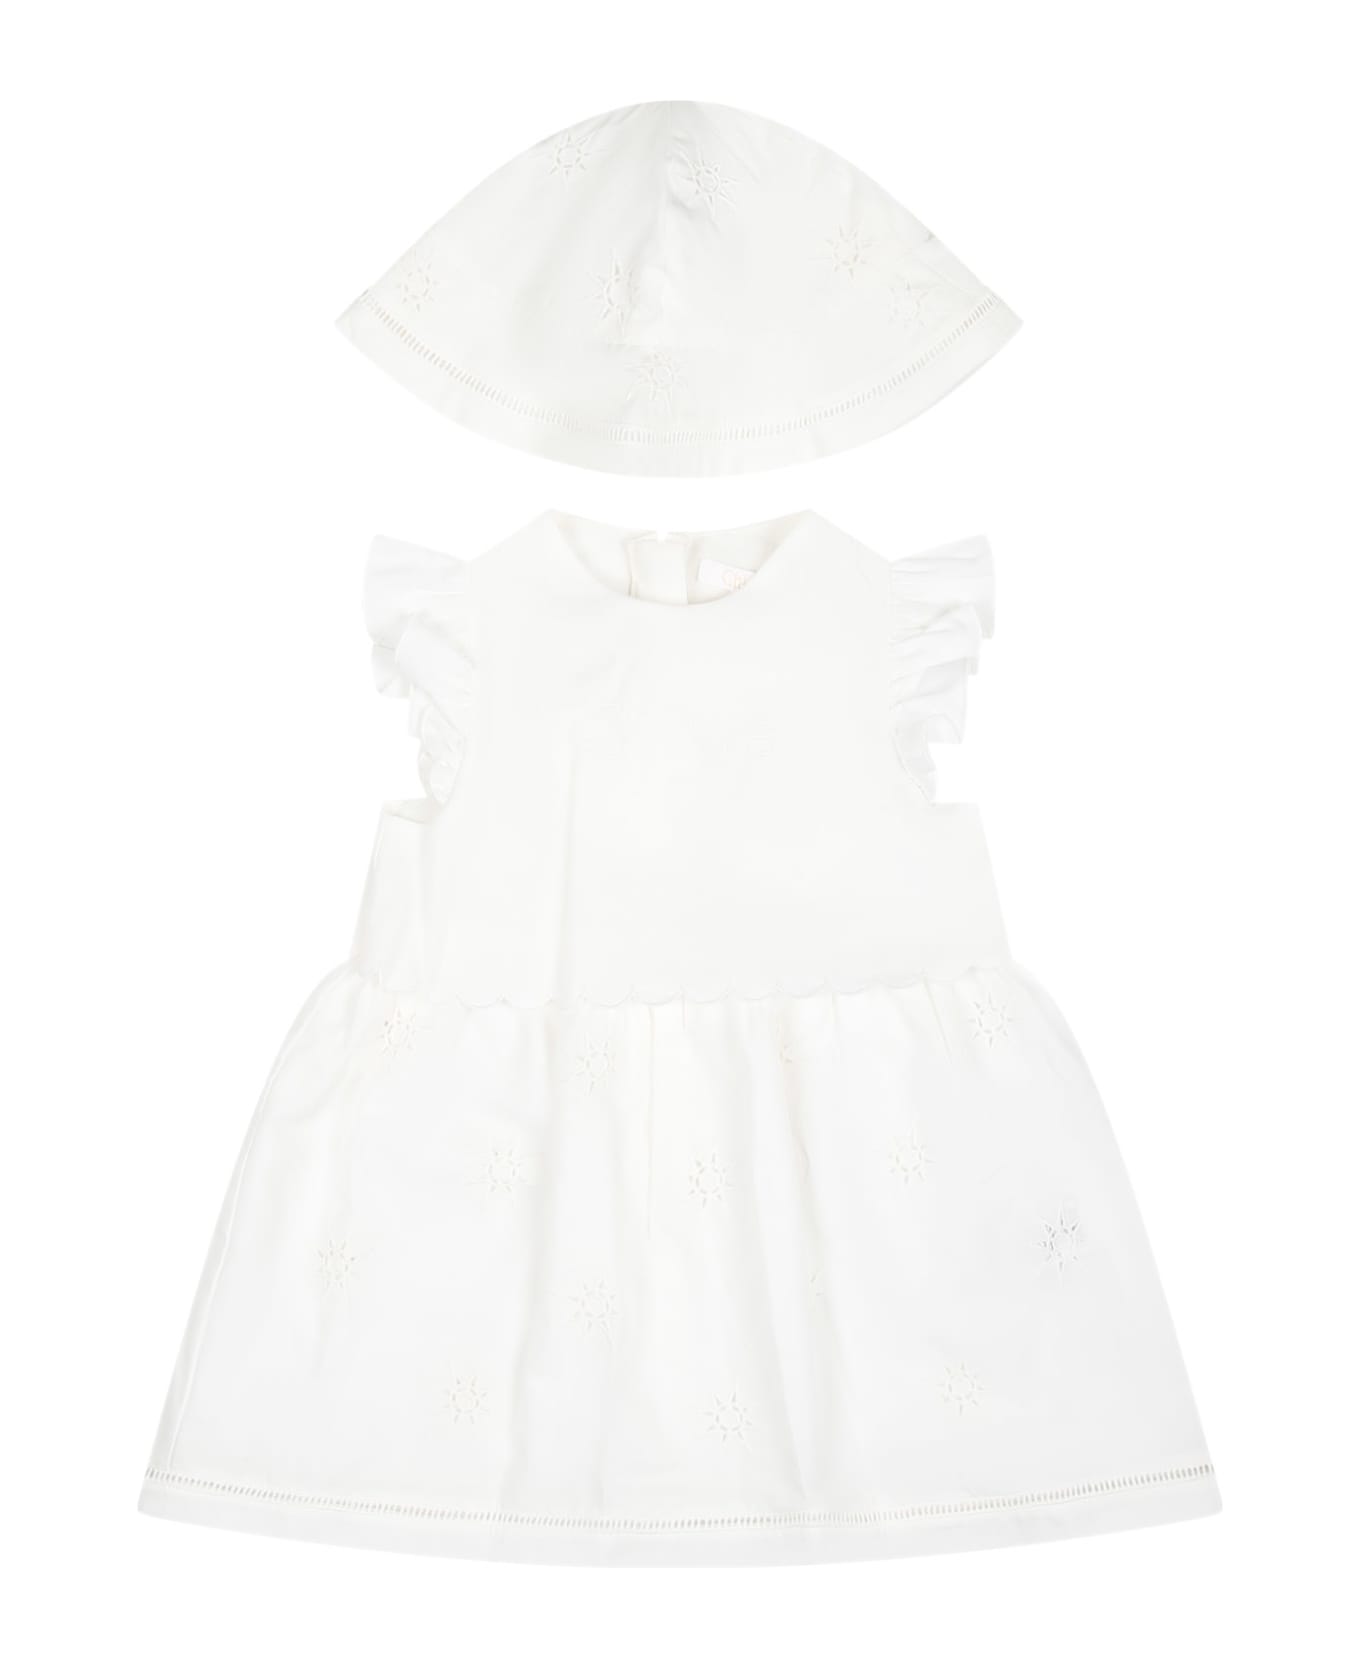 Chloé White Dress For Baby Girl With Logo - White ウェア